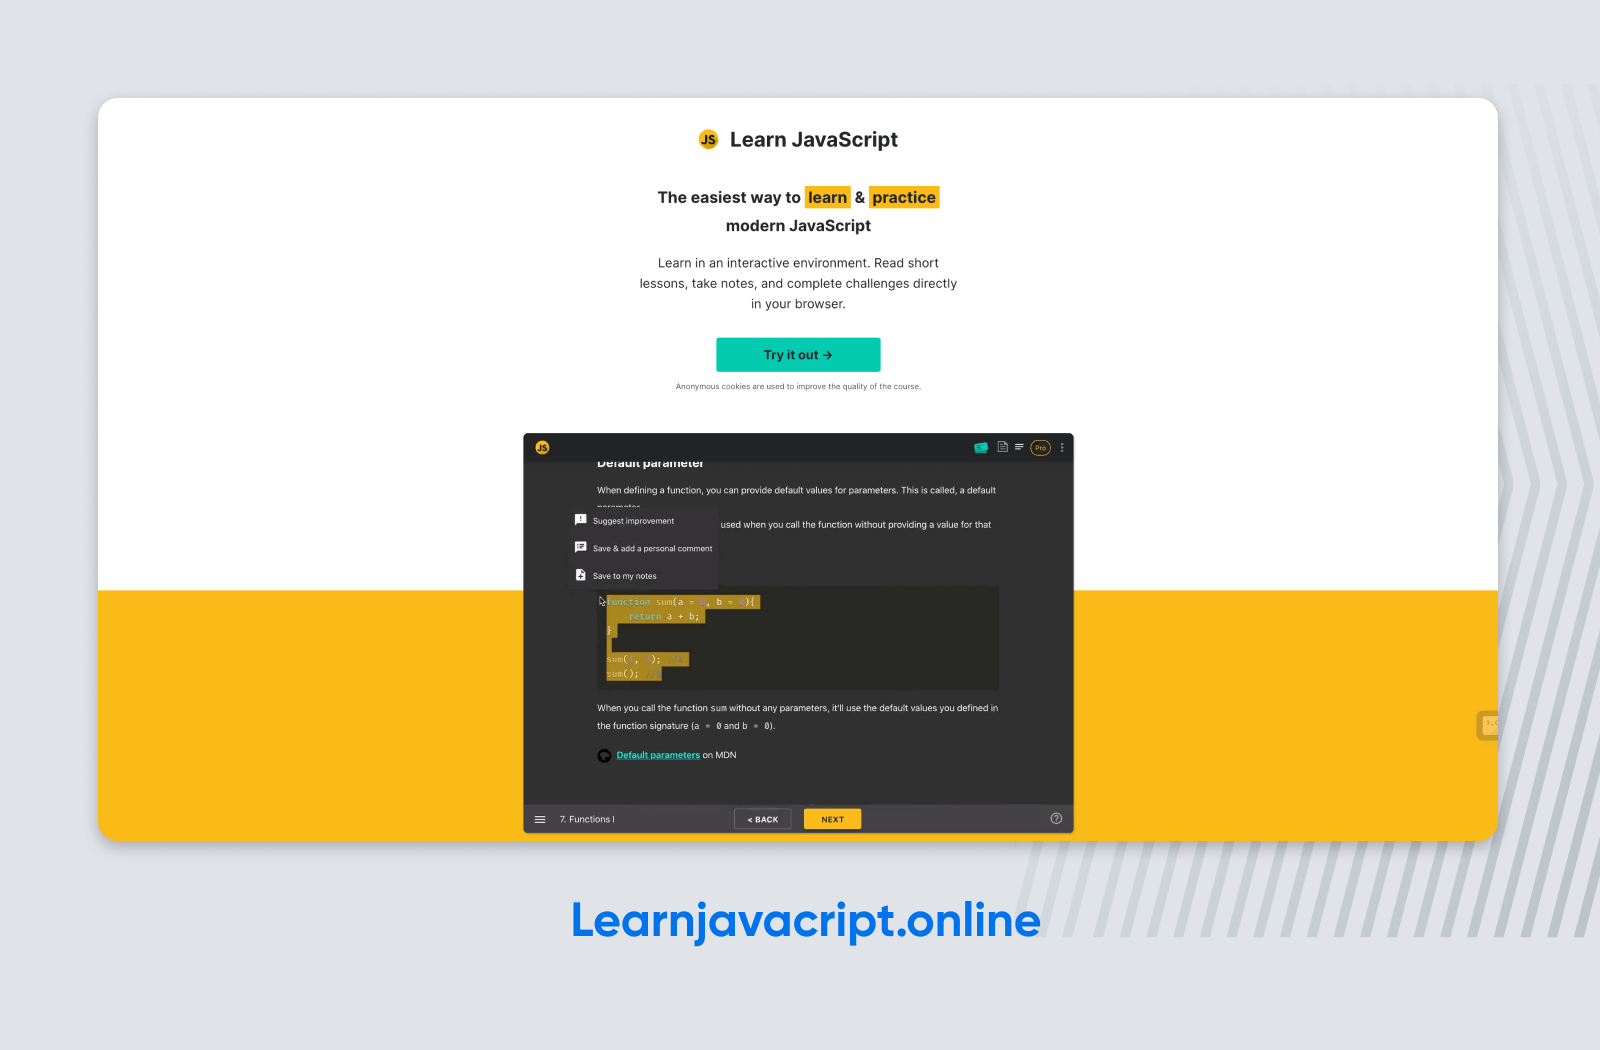 Learnjavacript.online